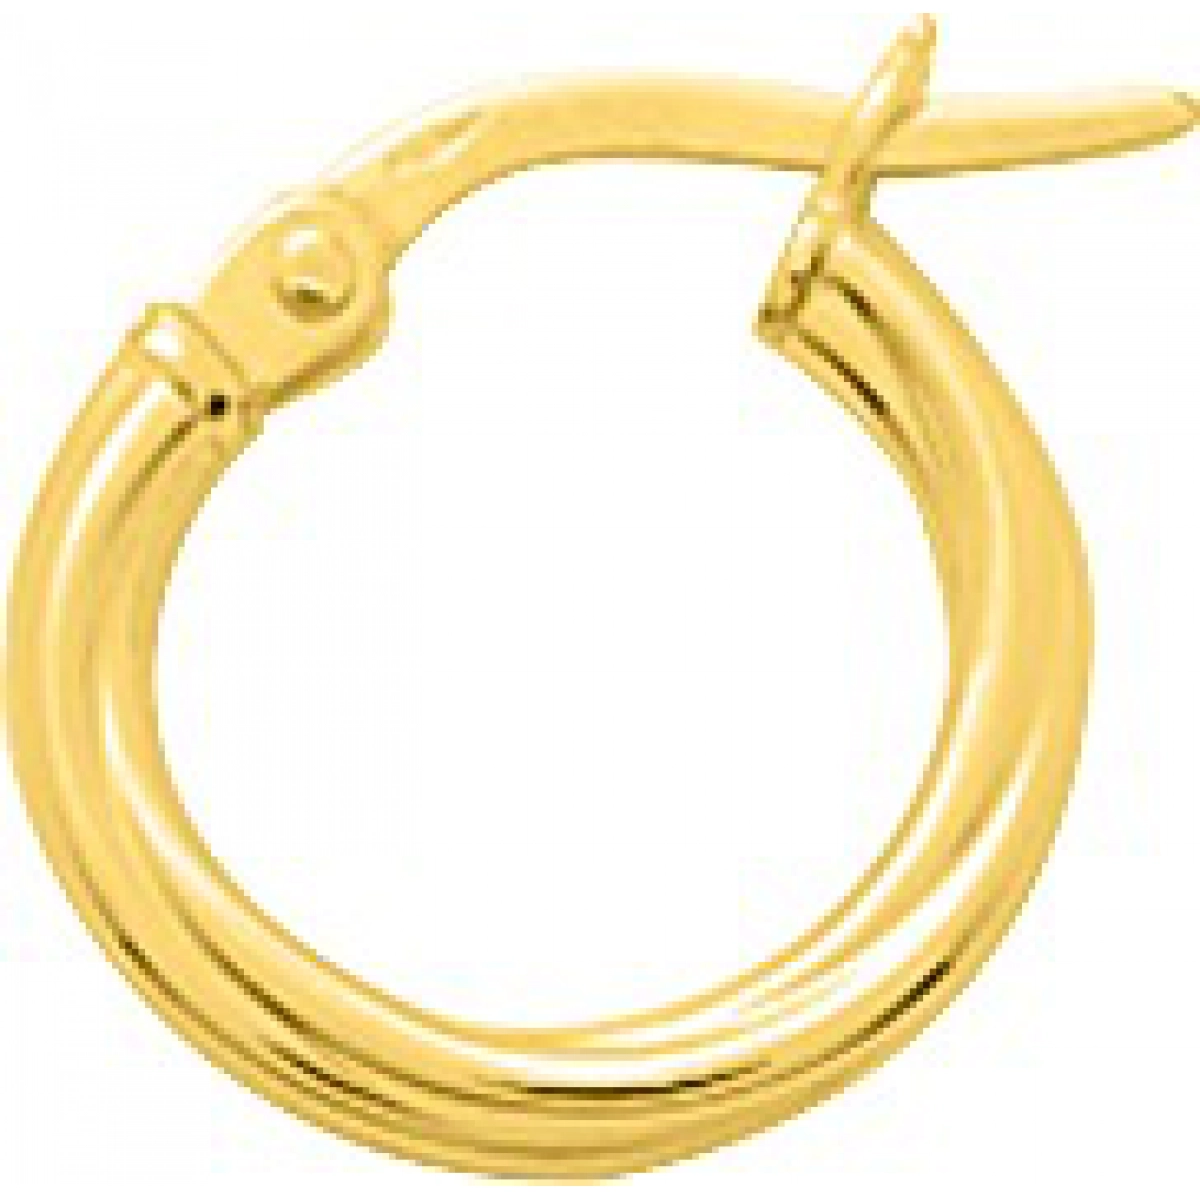 Hoops earrings pair twisted 9K YG  Lua Blanca  650003.3.0